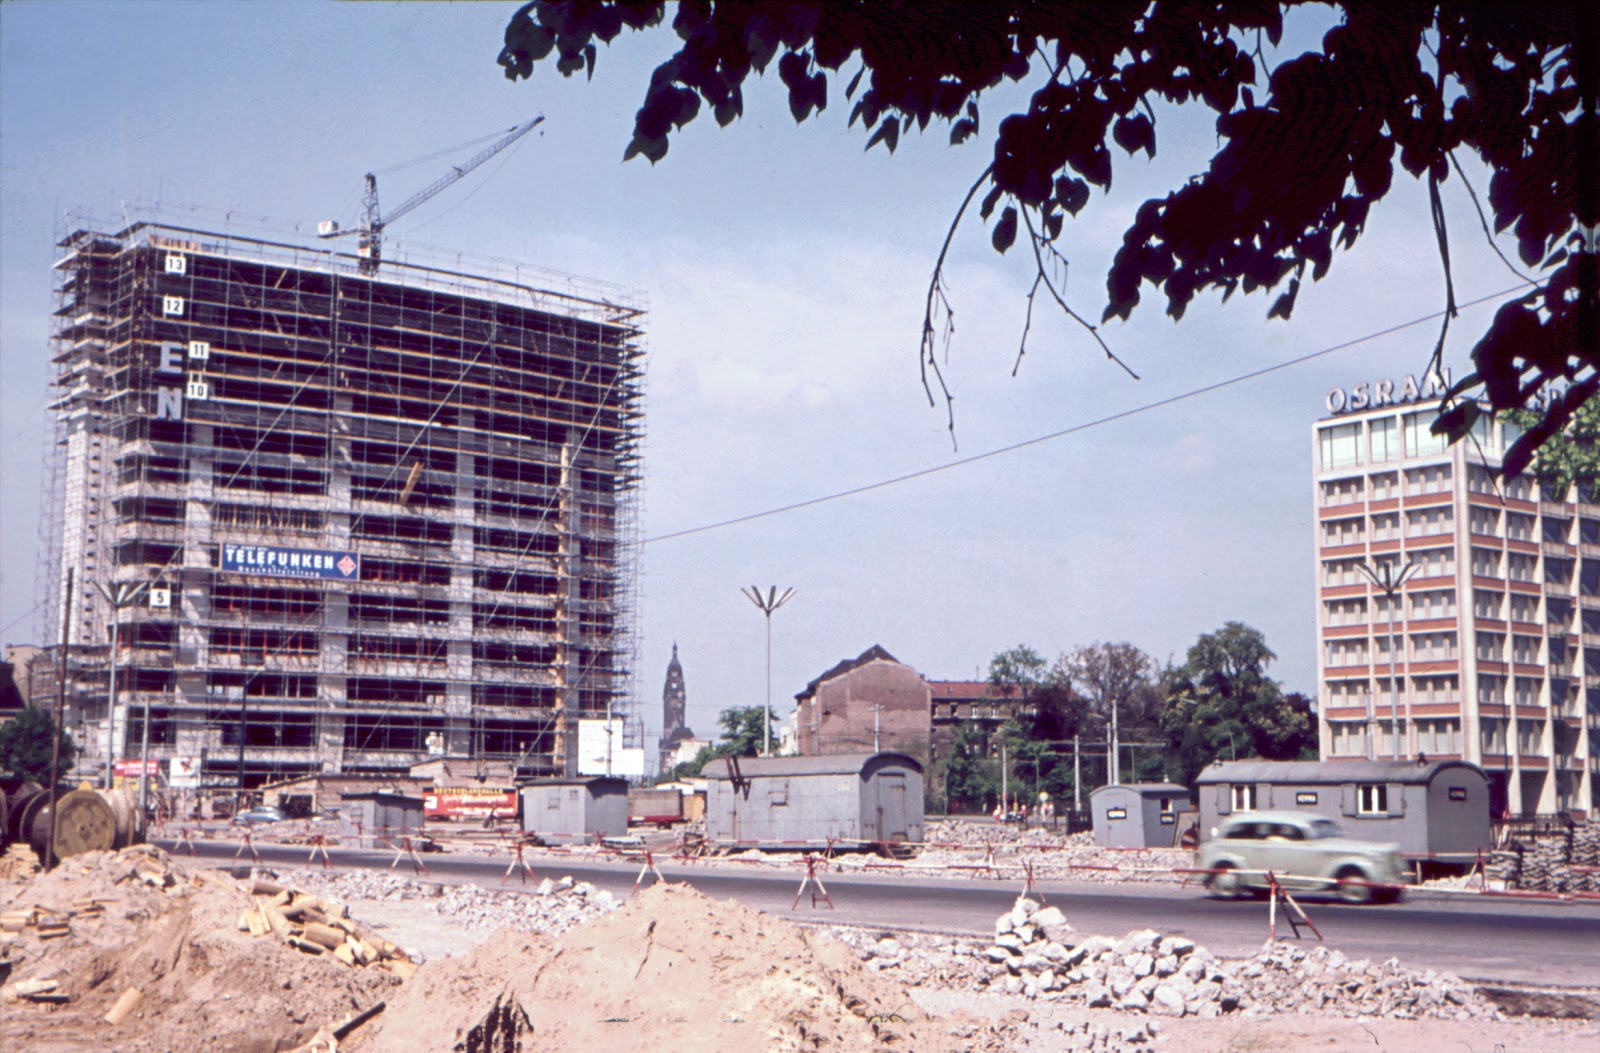 Baustelle Historisch, Ernst-Reuter-Platz, 10587 Berlin, 1950er Jahre